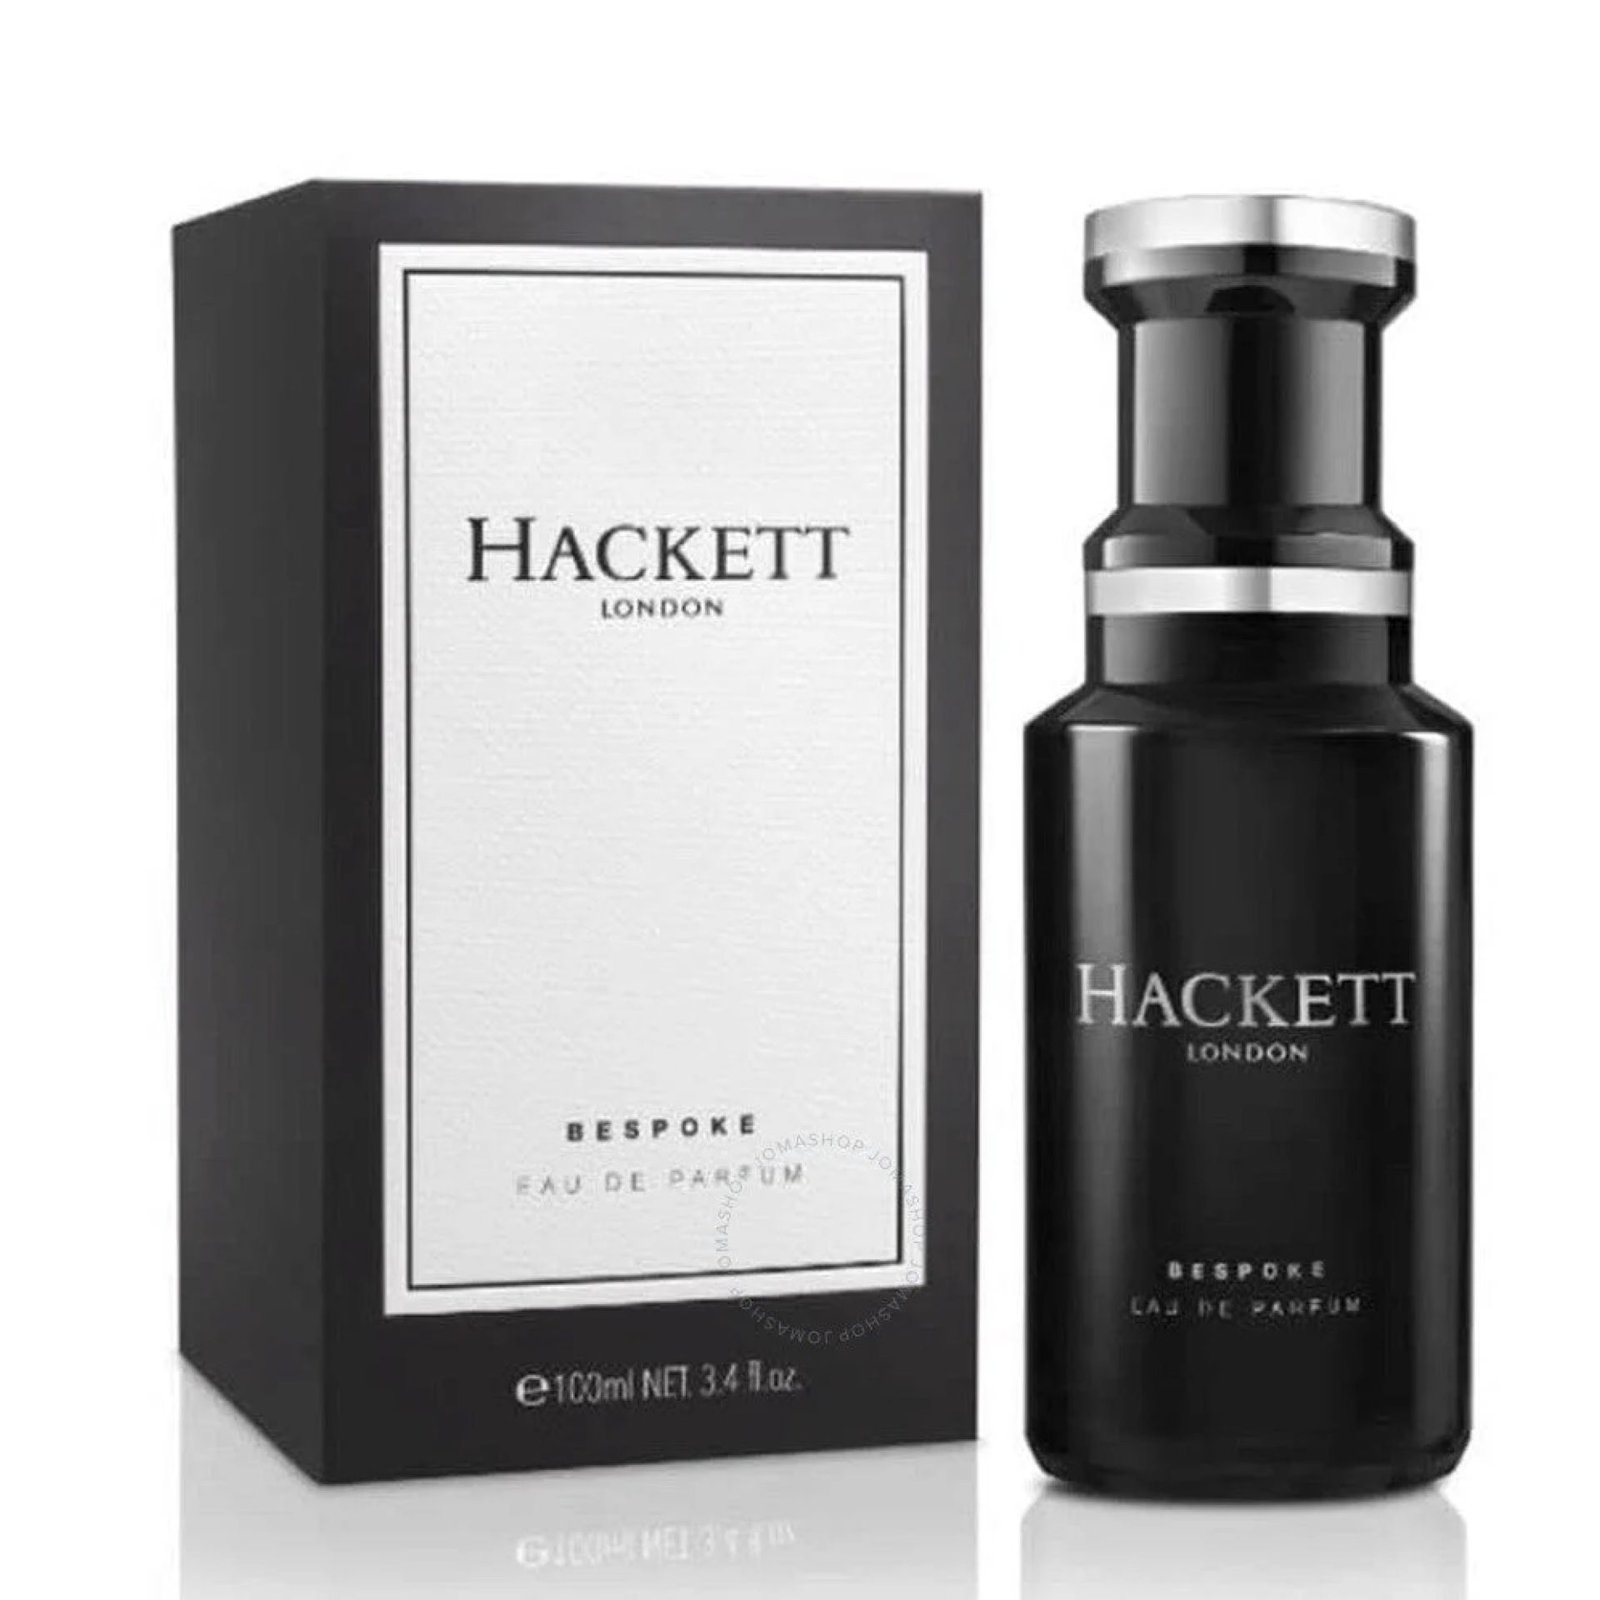 Buy Hackett Bespoke London Eau De 100ml at Rs. 11000 from Likeshop.pk